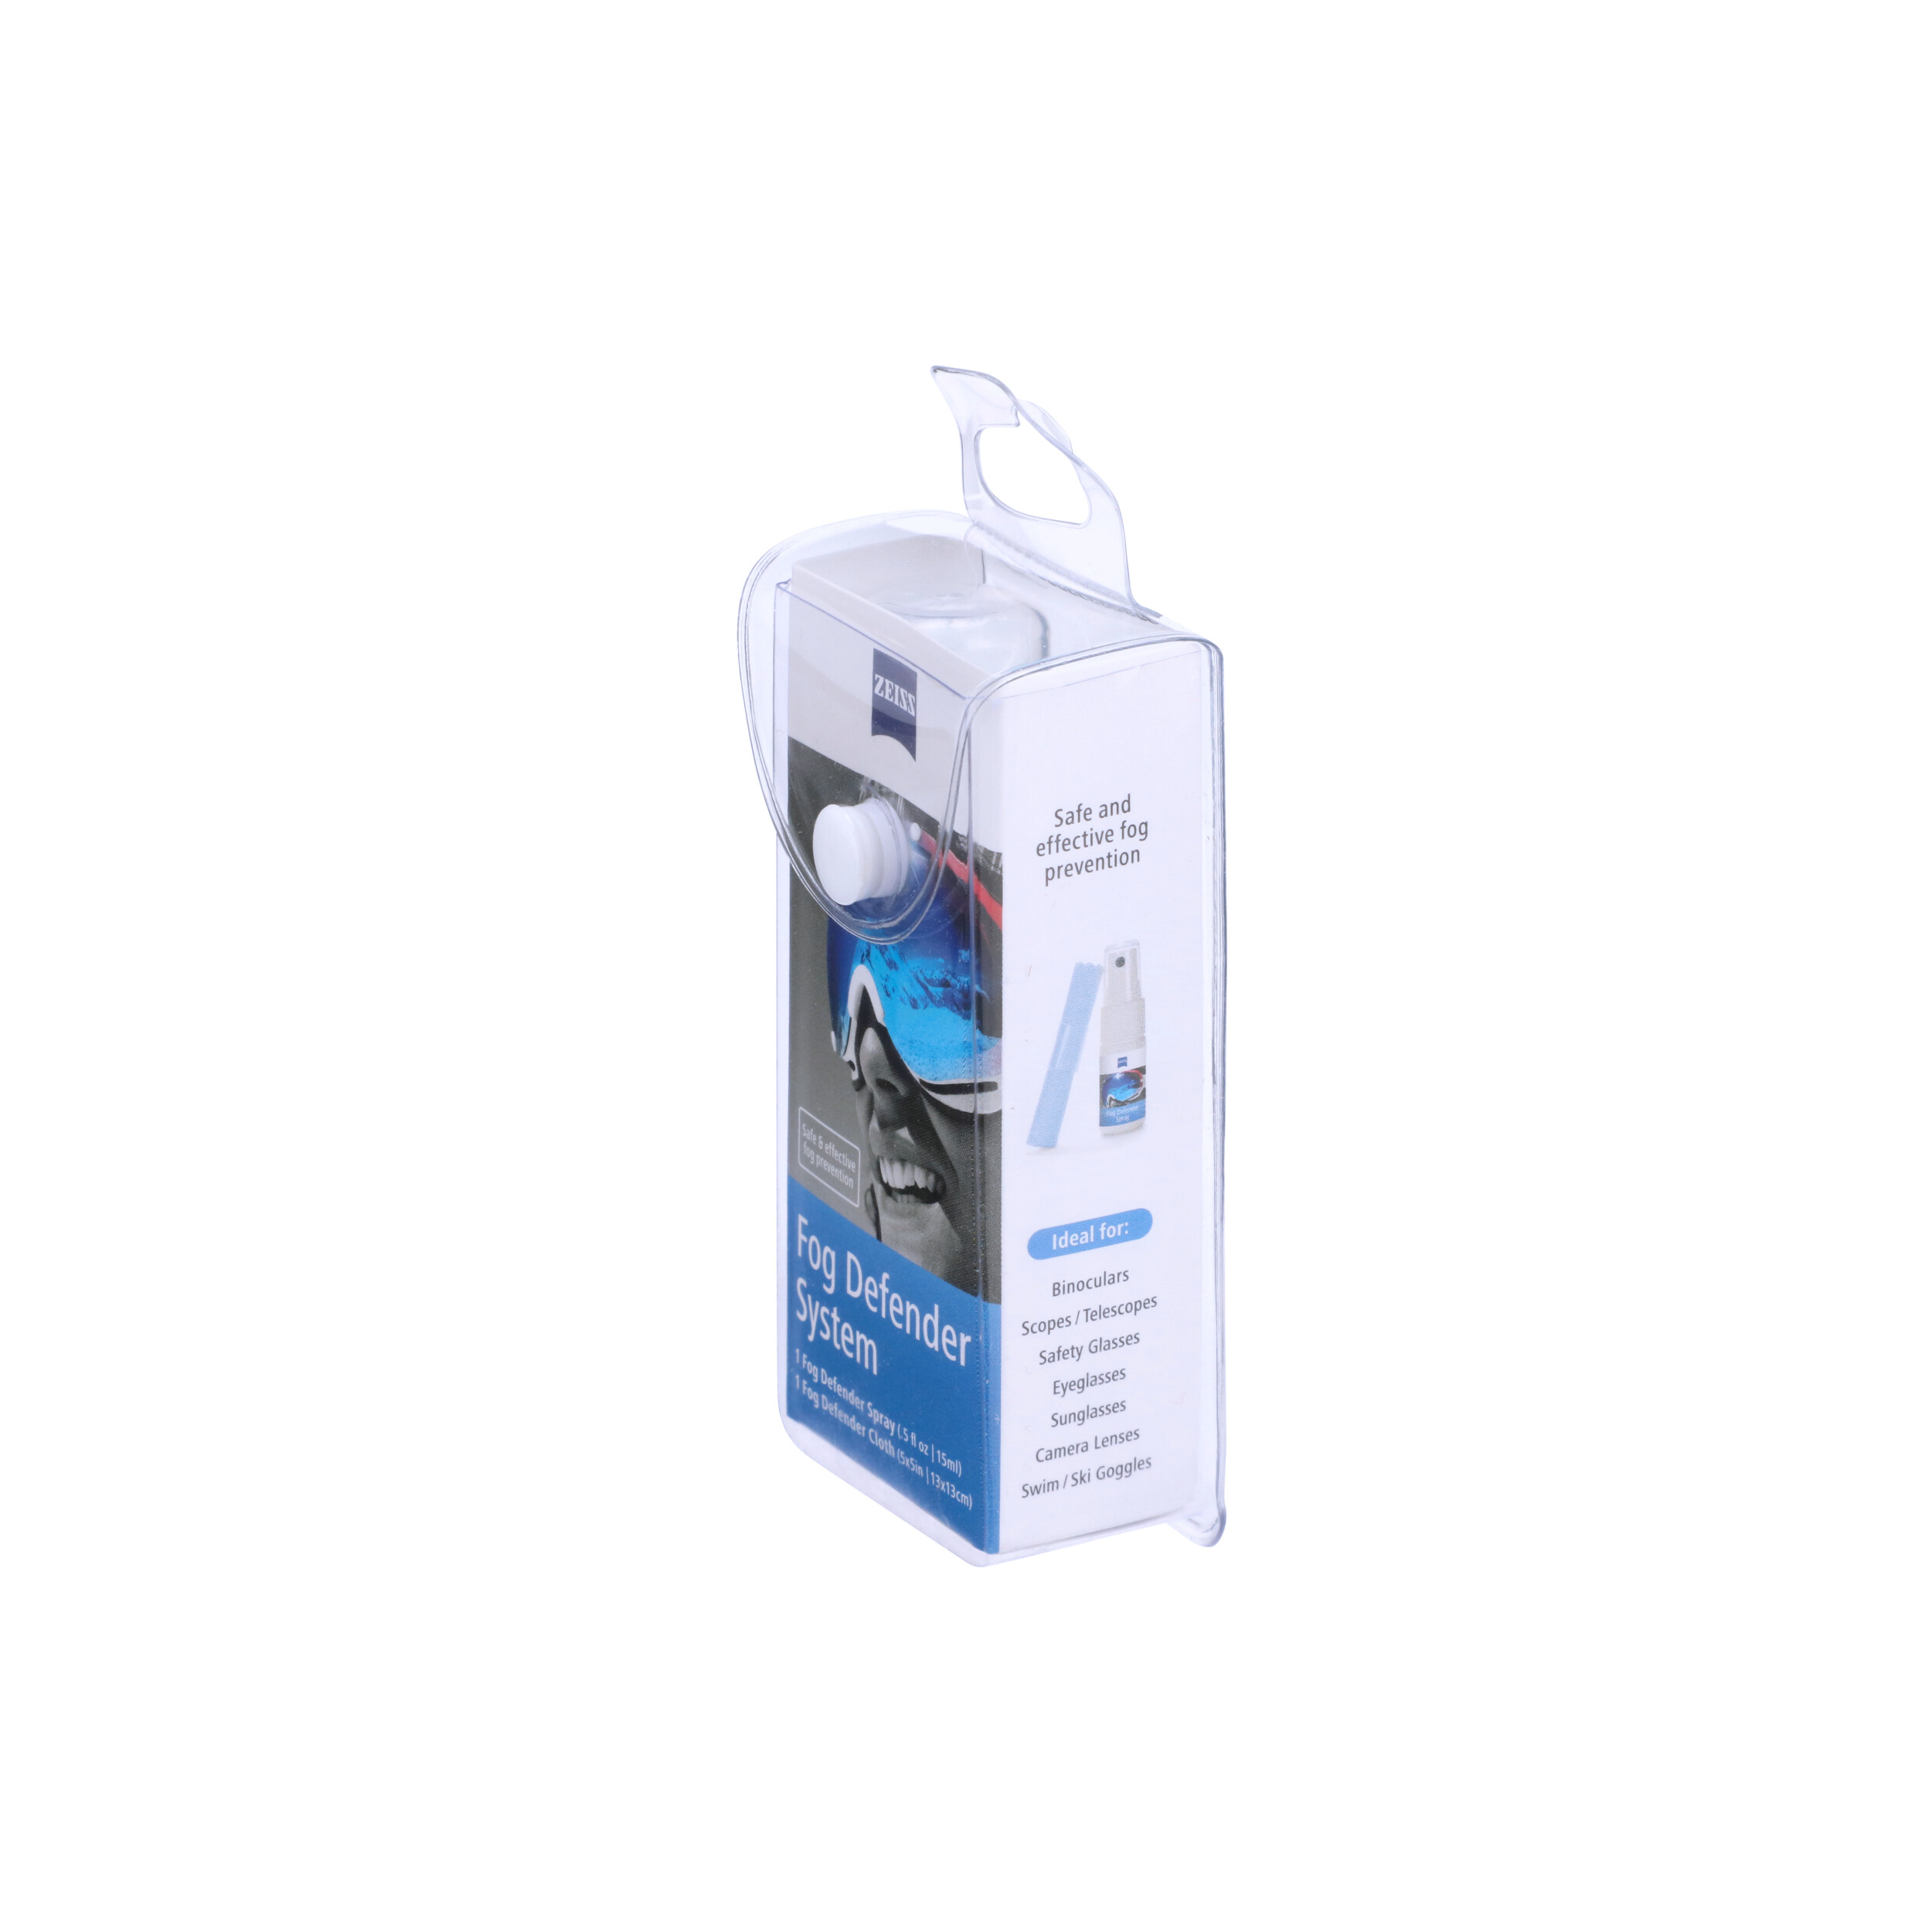 ZEISS Anti-Fog Defender Lens Cleaning Kit 000000-2451-373 B&H